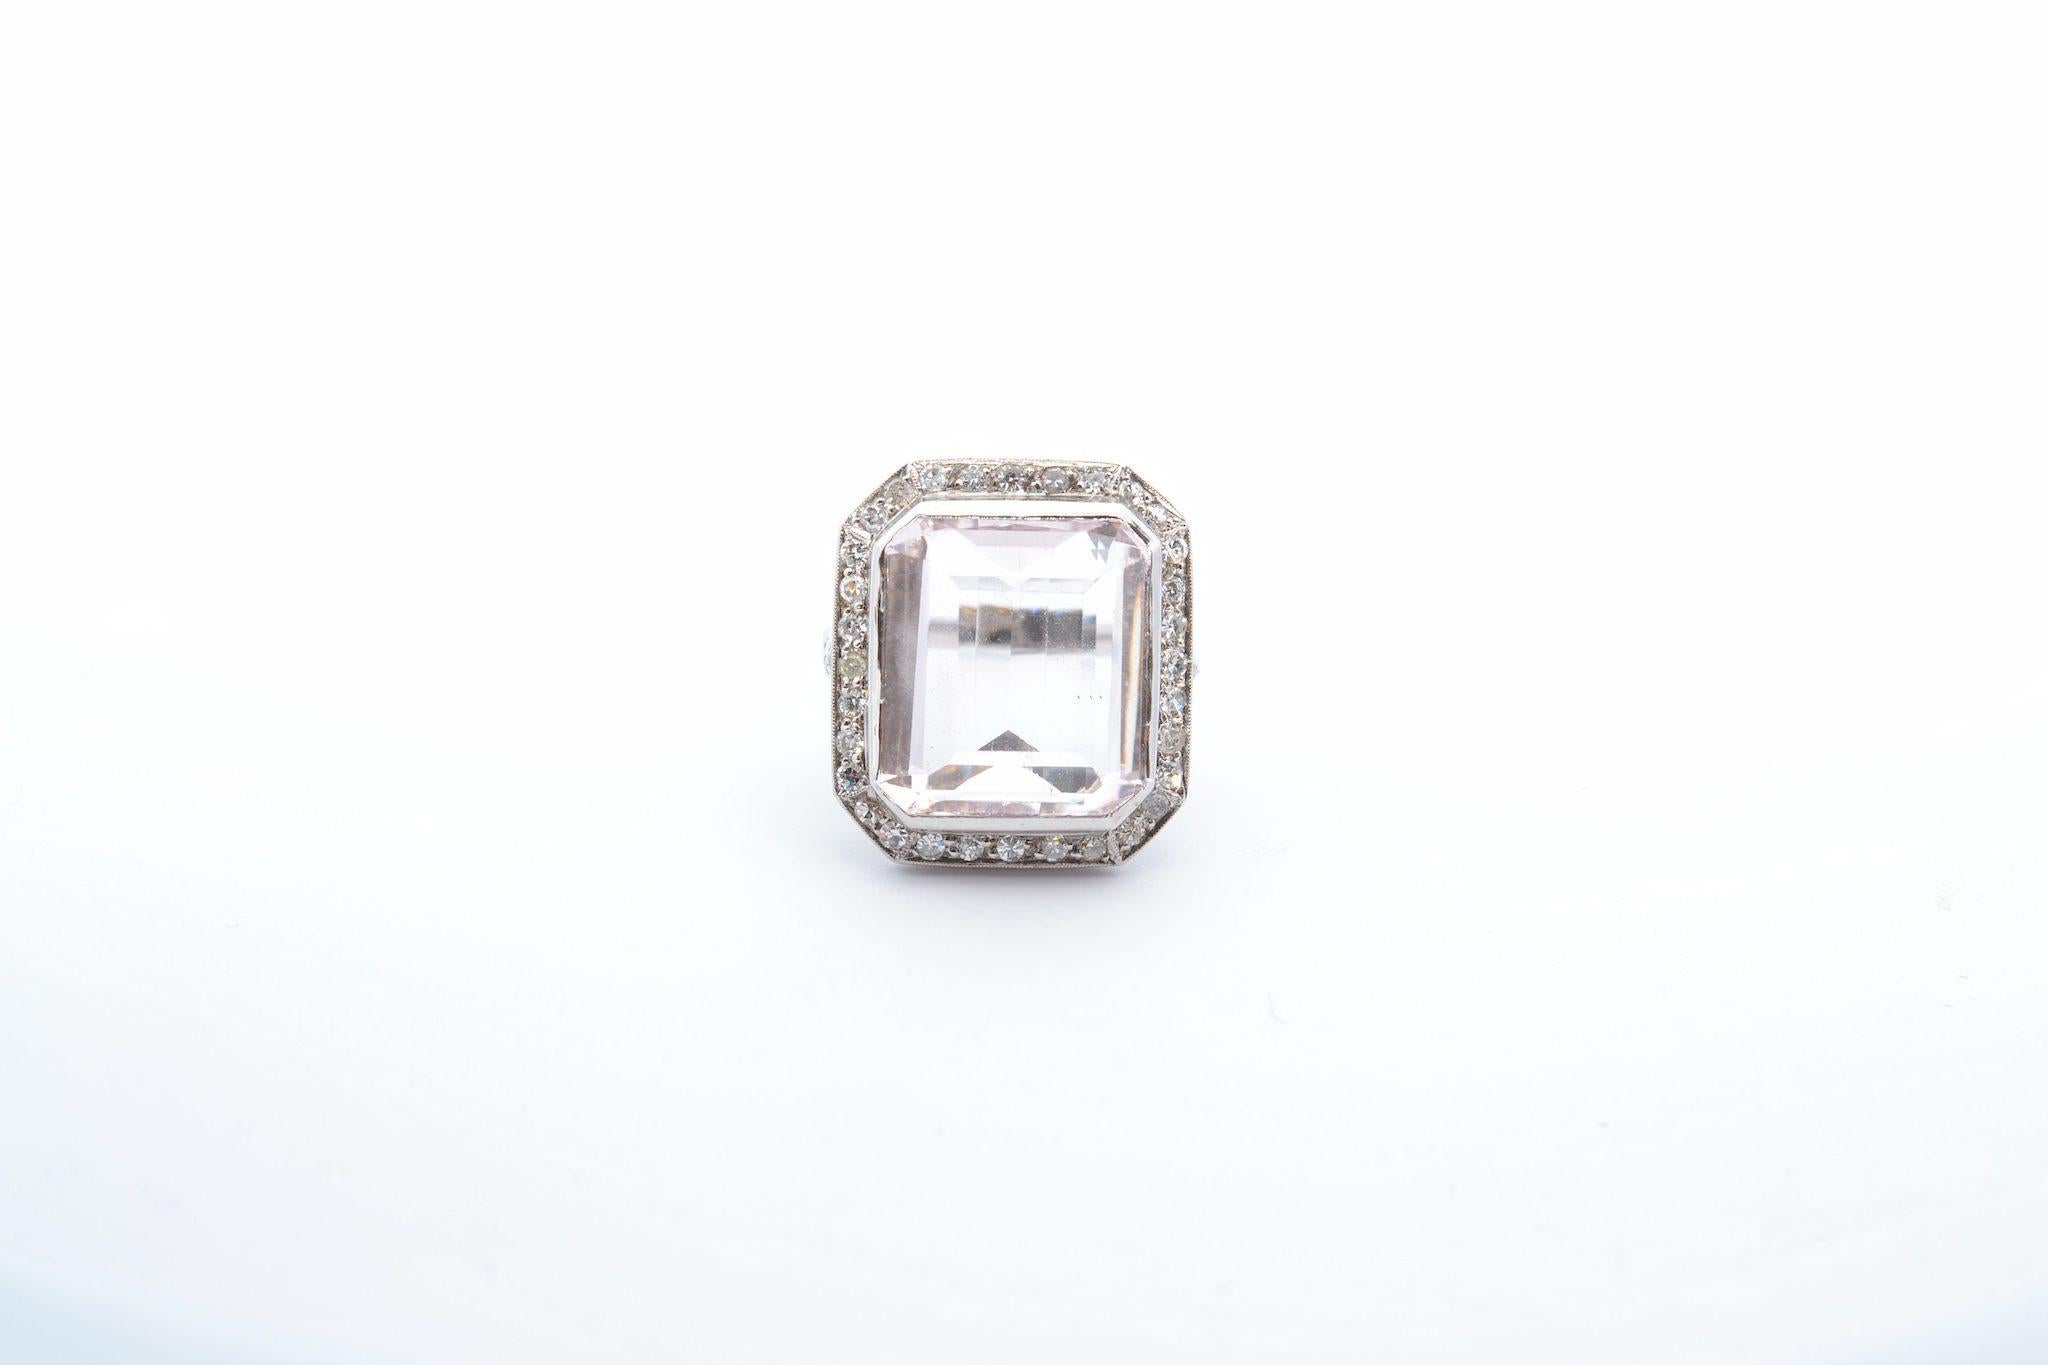 Pierres : Morganite naturelle de 14,5 cts et 32 diamants, poids : 0,75ct
Matériau : Platine
Dimensions : 21mm x 19mm
Poids : 10.2 g
Période : 1950
Taille : 55 (taille libre)
Certificat
Réf. : 25085